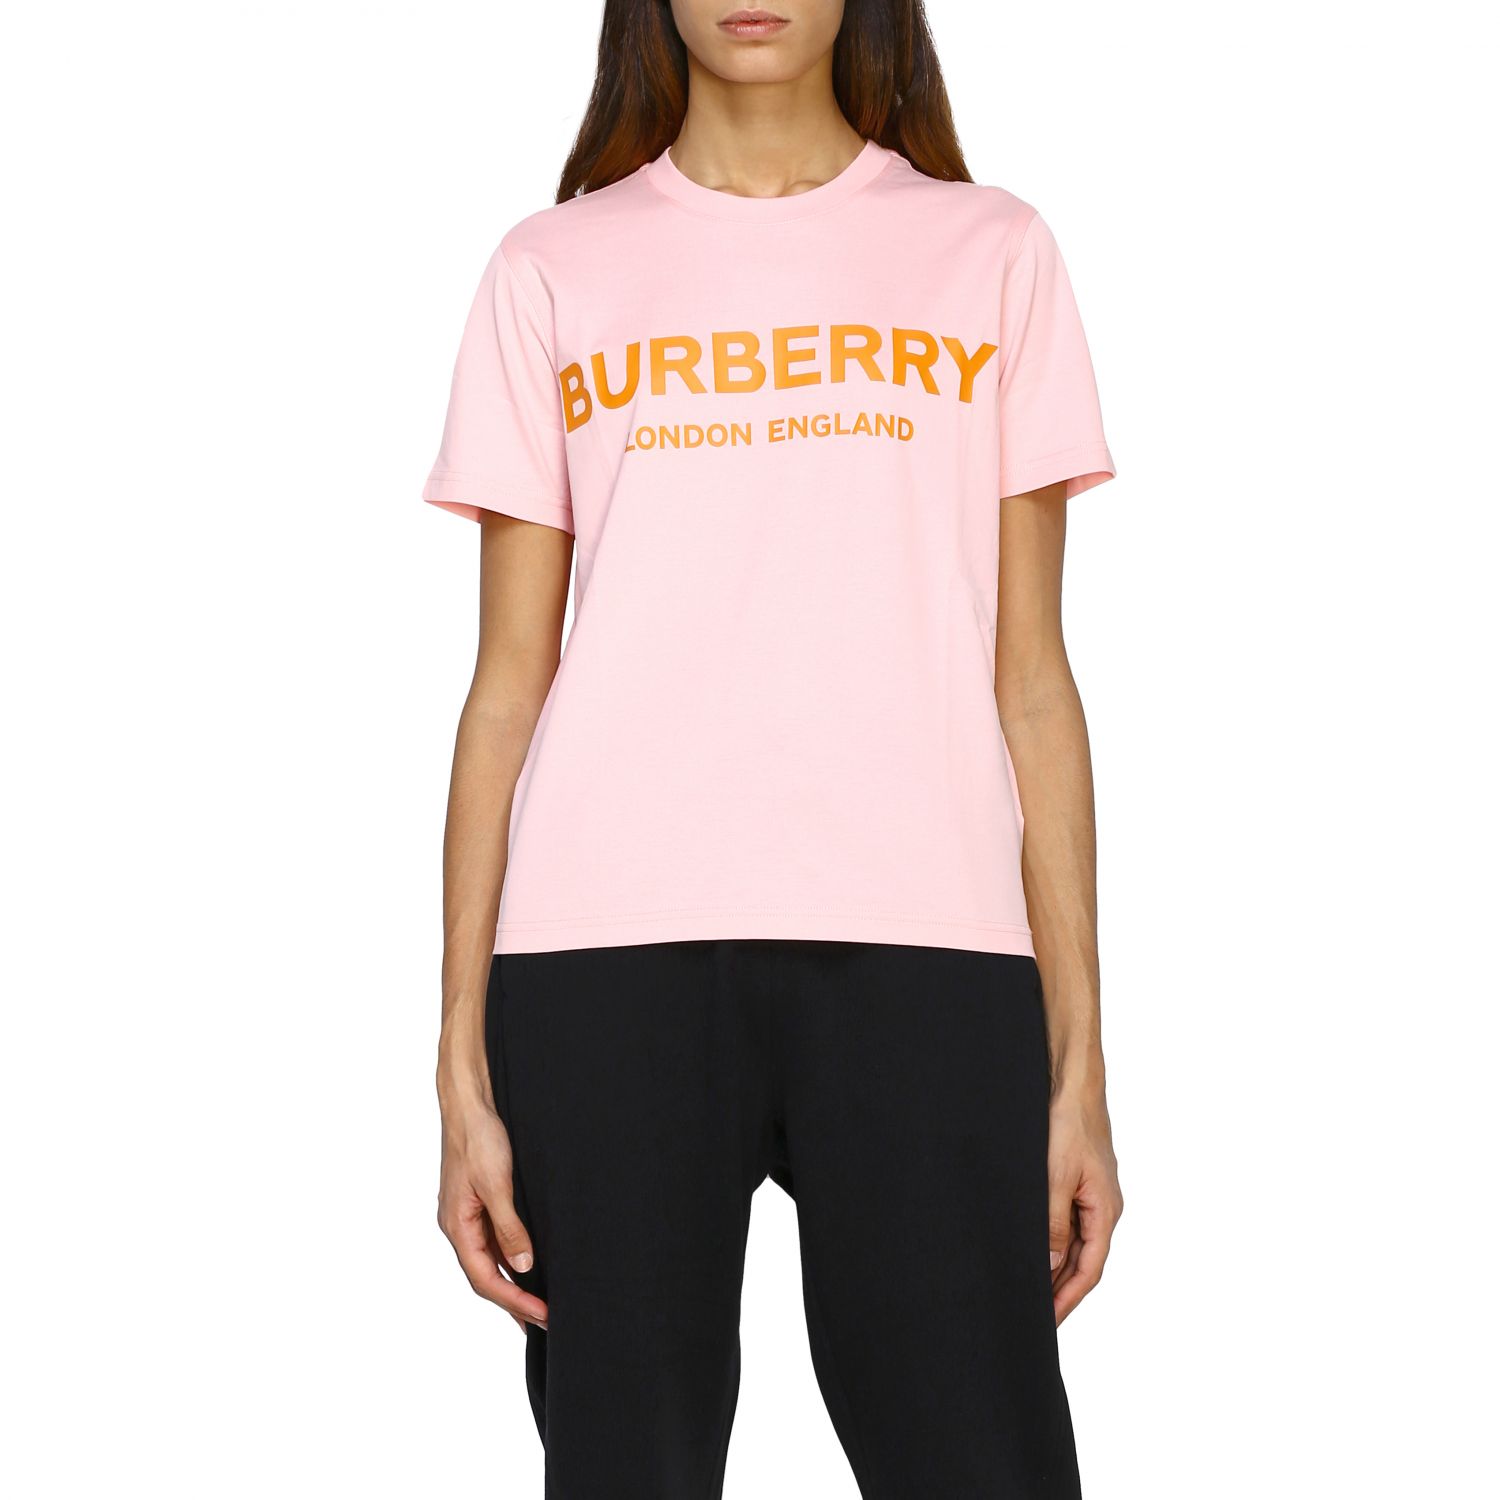 burberry t shirt womens